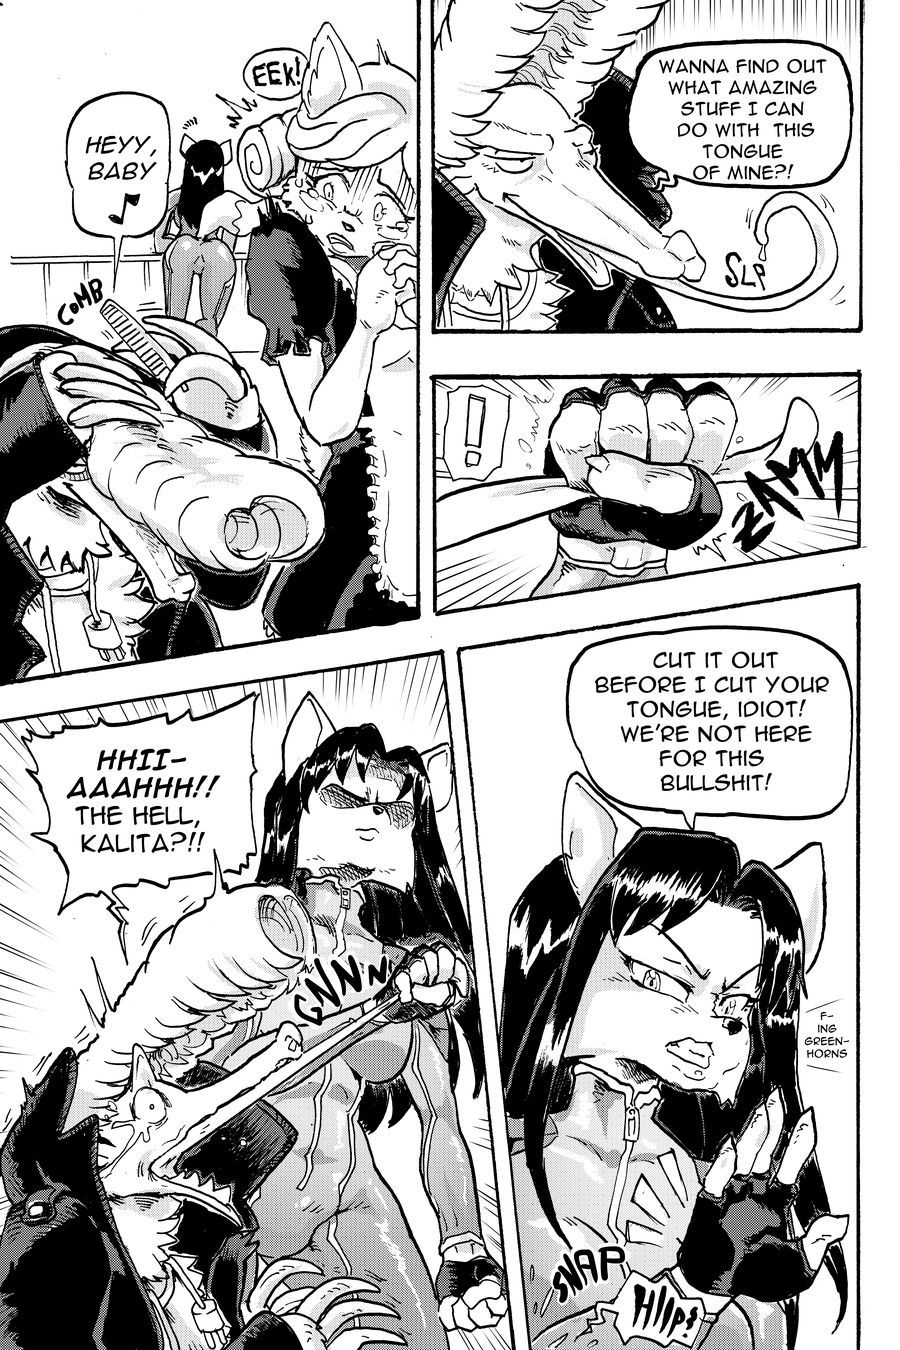 [Daigaijin] Furry Fight Chronicles (Ongoing) 82